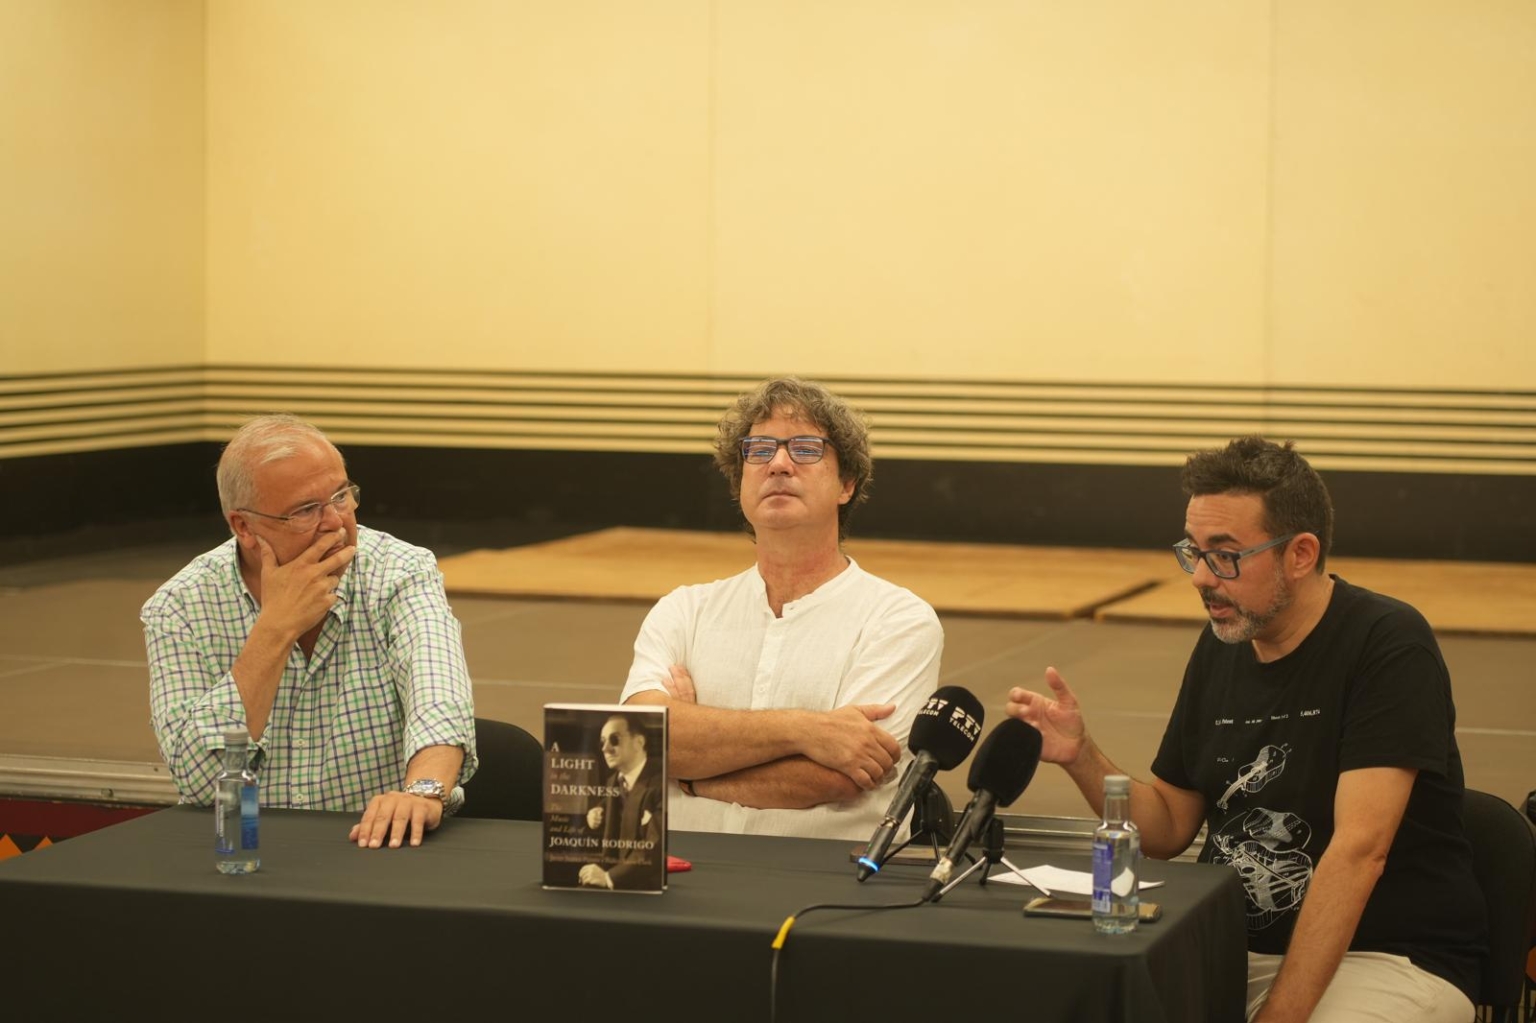 LIGHT 44 DARKNESS JOAQUIN RODRIGO. Tres hombres están sentados en una mesa con un libro que dice "poesía en español".